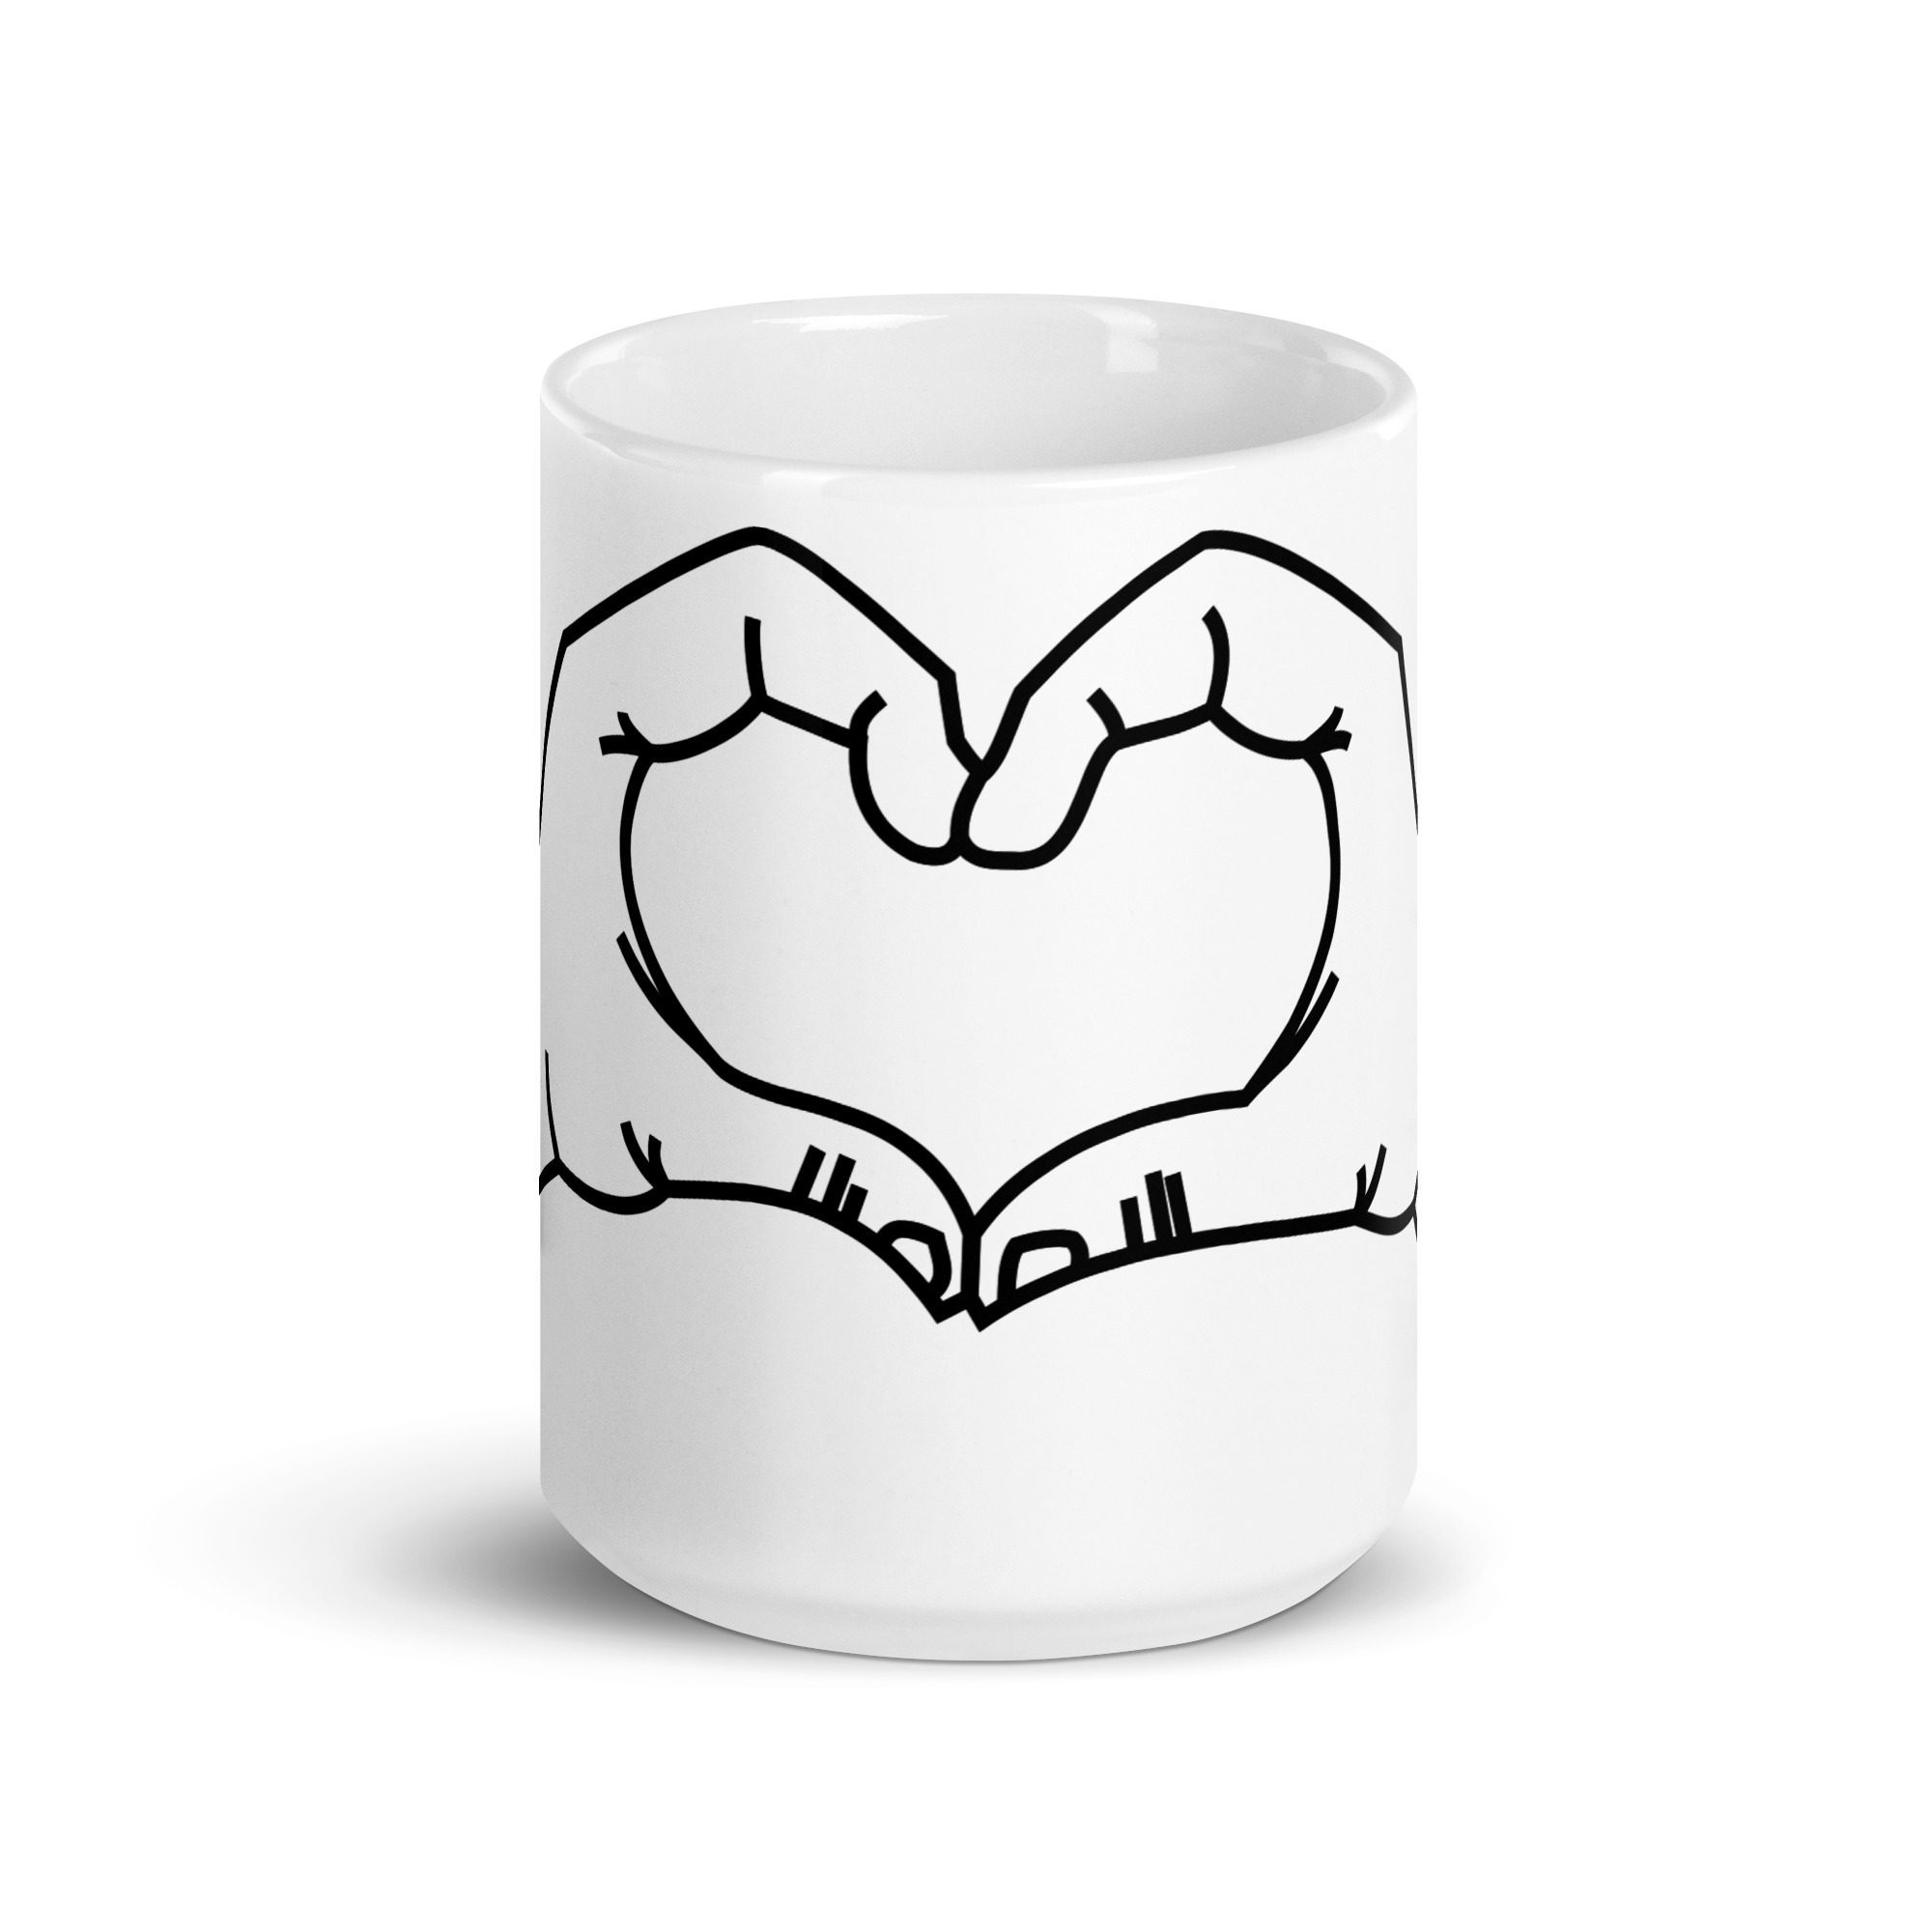 white glossy mug white 15 oz front view 652c0f426b70f